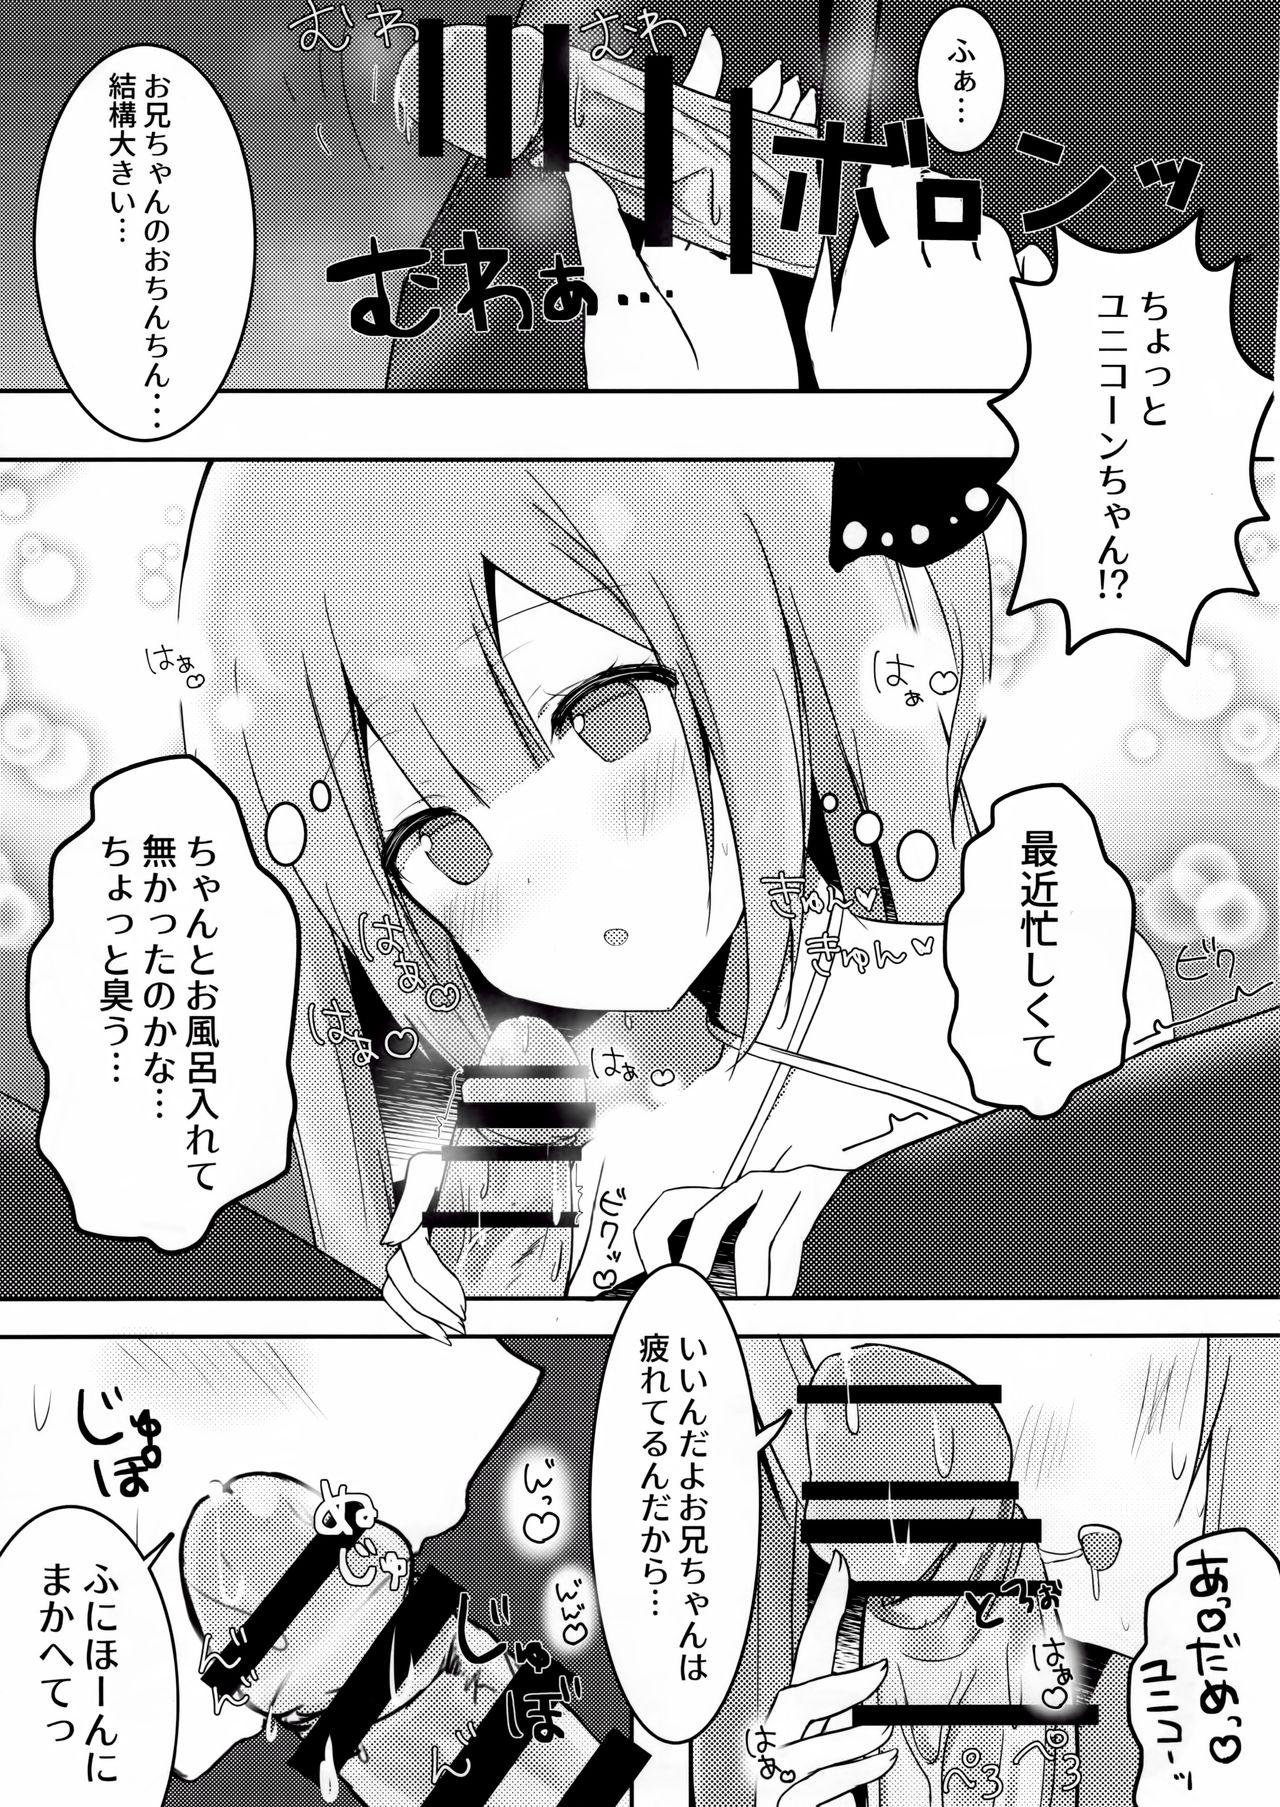 Spoon Onii-chan Unicorn to iikoto... suru? - Azur lane Sex Toys - Page 6